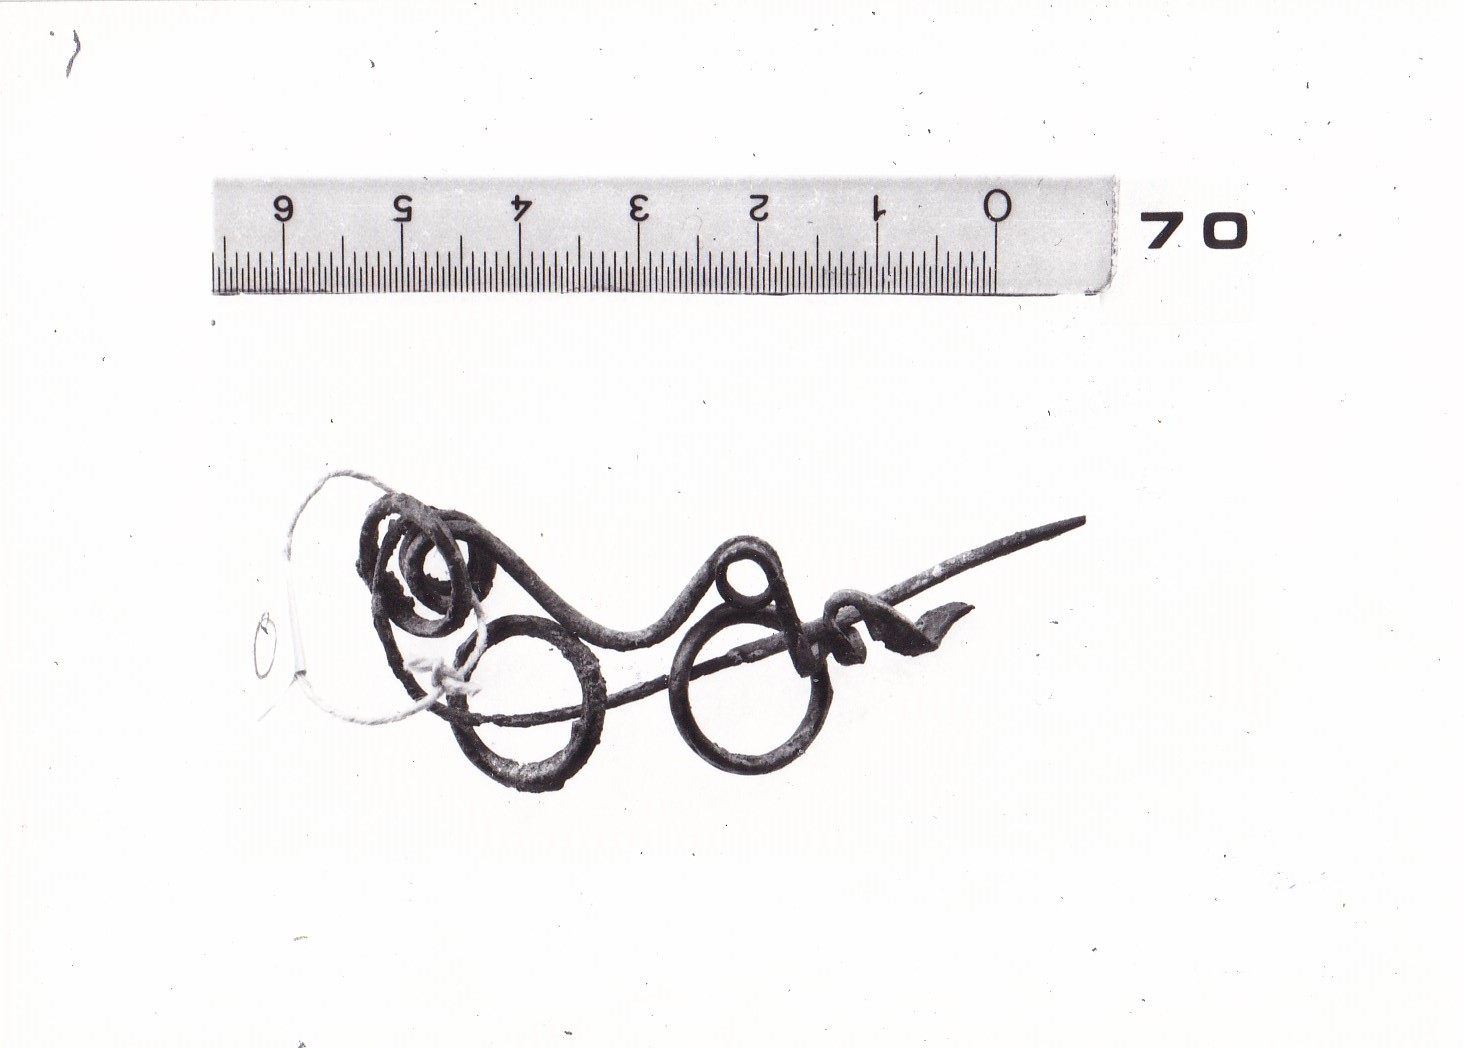 Fibula ad arco serpeggiante con anellino infilato nell'ago - FASE TERNI I (fine Età del Bronzo finale)